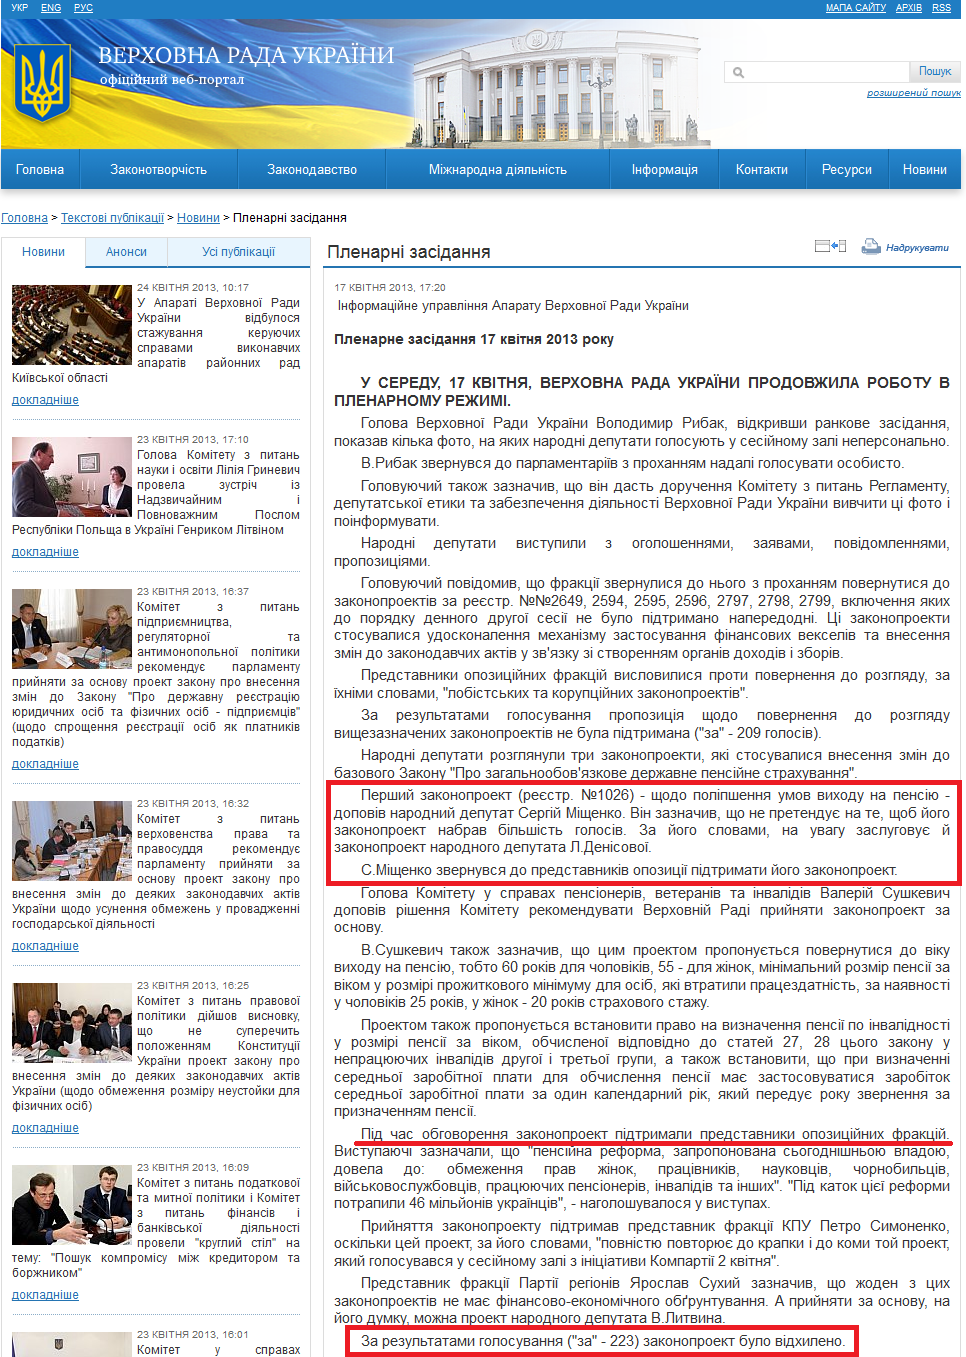 http://rada.gov.ua/news/Novyny/Plenarni_zasidannya/75975.html